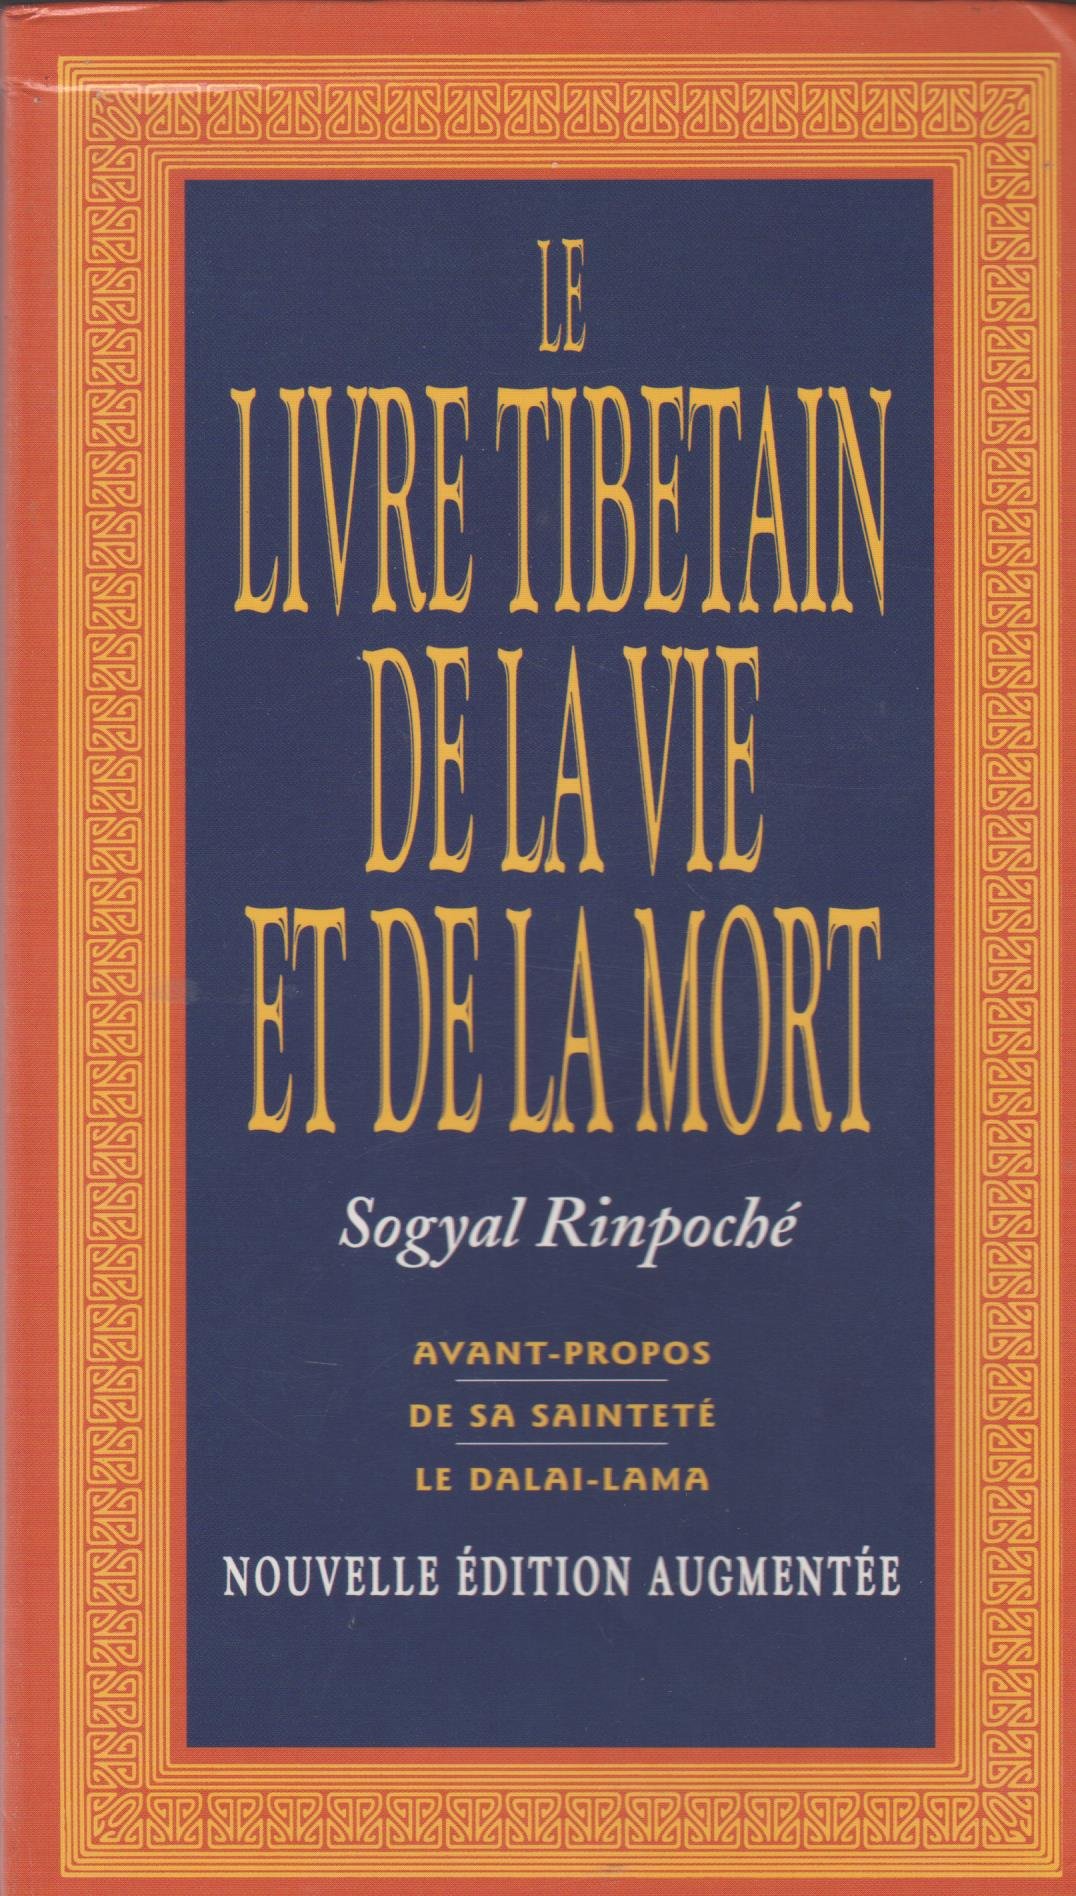 Book cover – Livre tibétain de la vie et de la mort